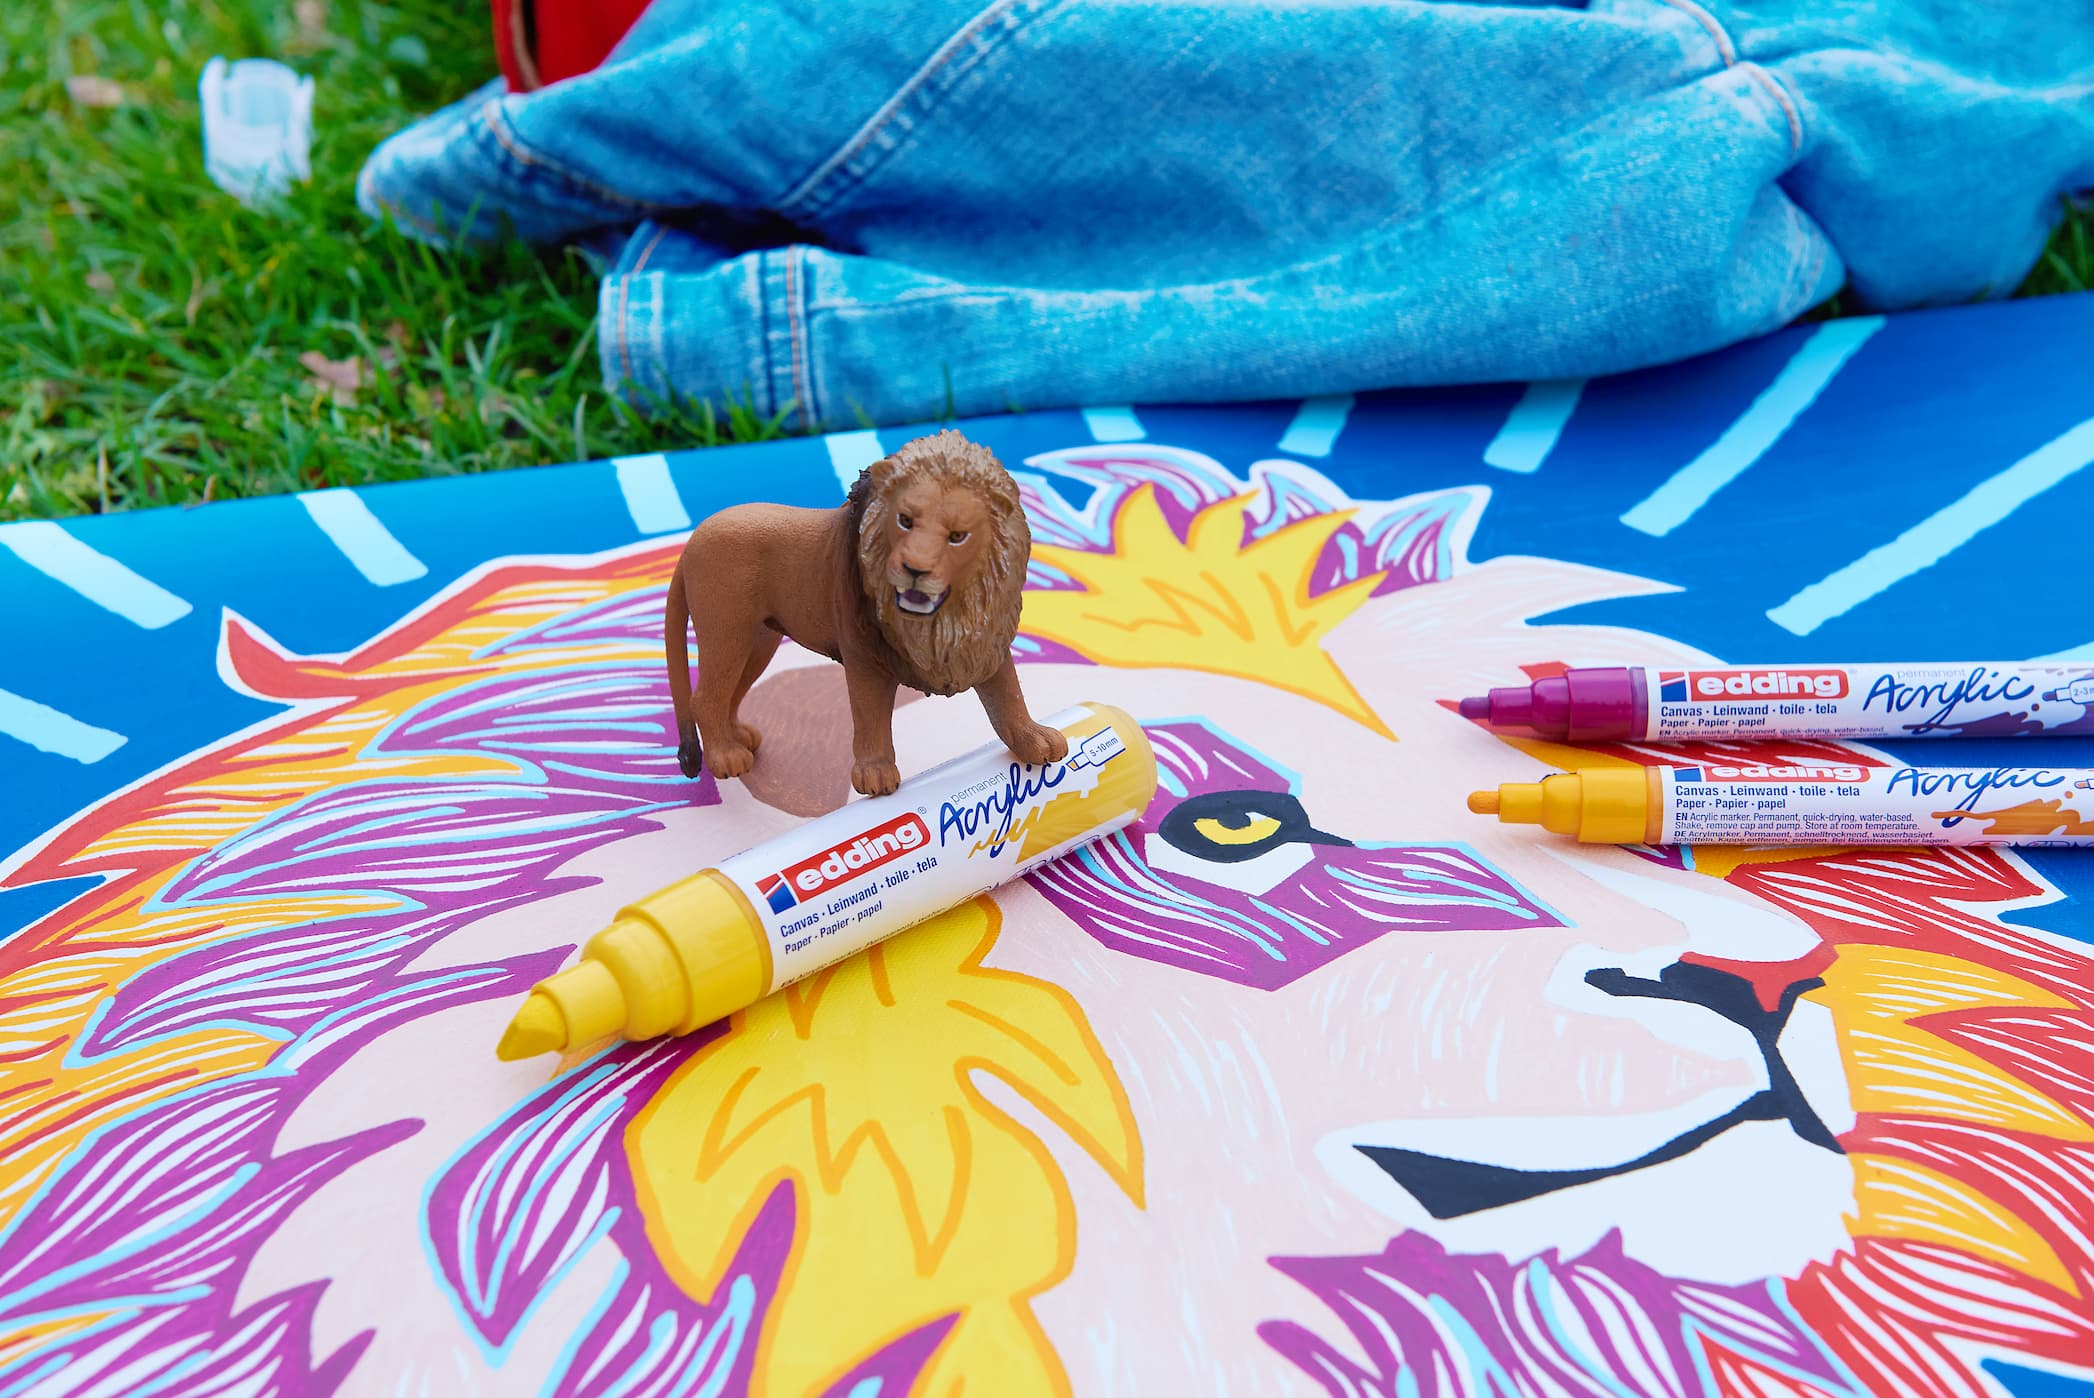 Ein kleiner Spielzeuglöwe steht auf einer großen, farbenfrohen Zeichnung eines Löwengesichts, begleitet von einer Auswahl an bunten Markern, darunter der edding 5000 Acrylmarker breit mit Hochpig.